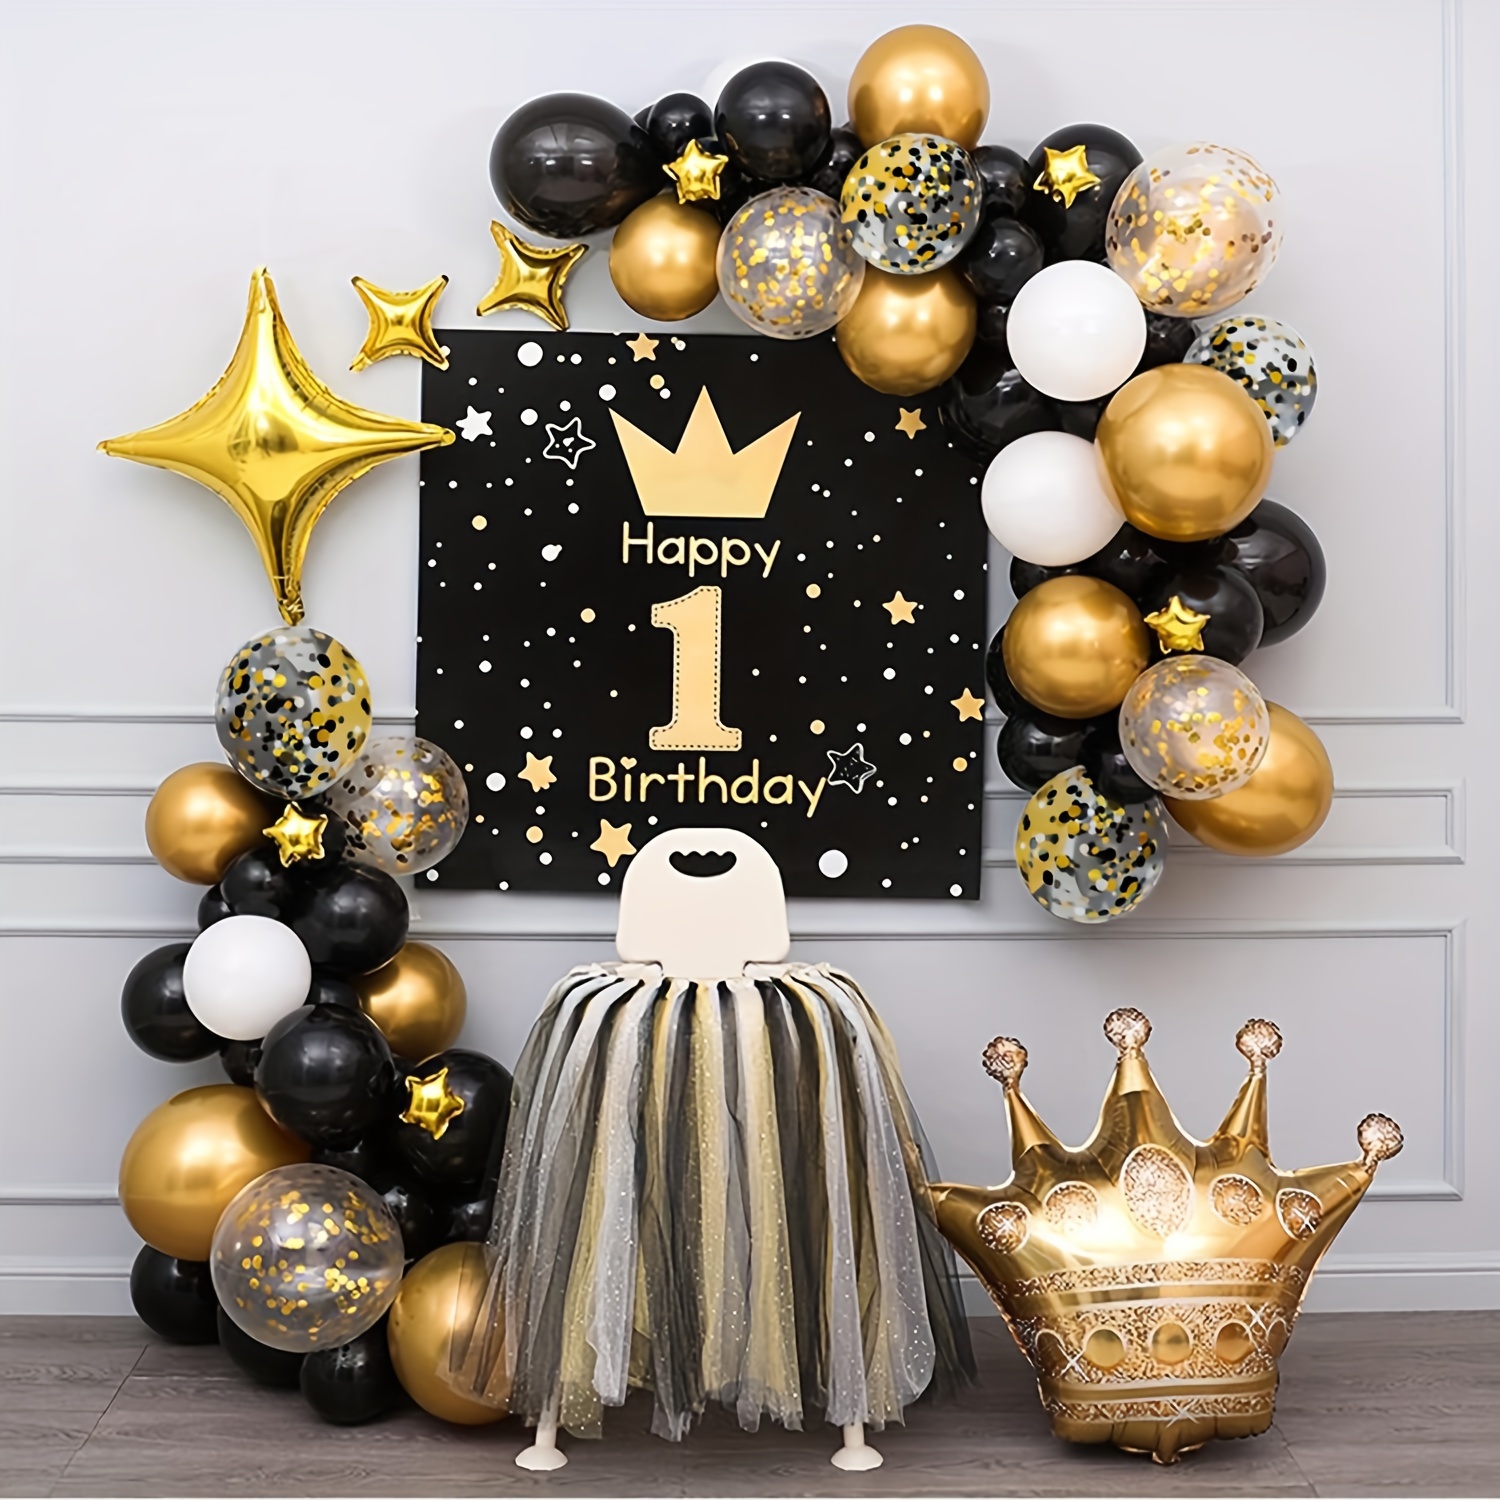 Globos de confeti negros y dorados, paquete de 50 globos de látex blanco de  12 pulgadas con cinta dorada para decoraciones de graduación, boda